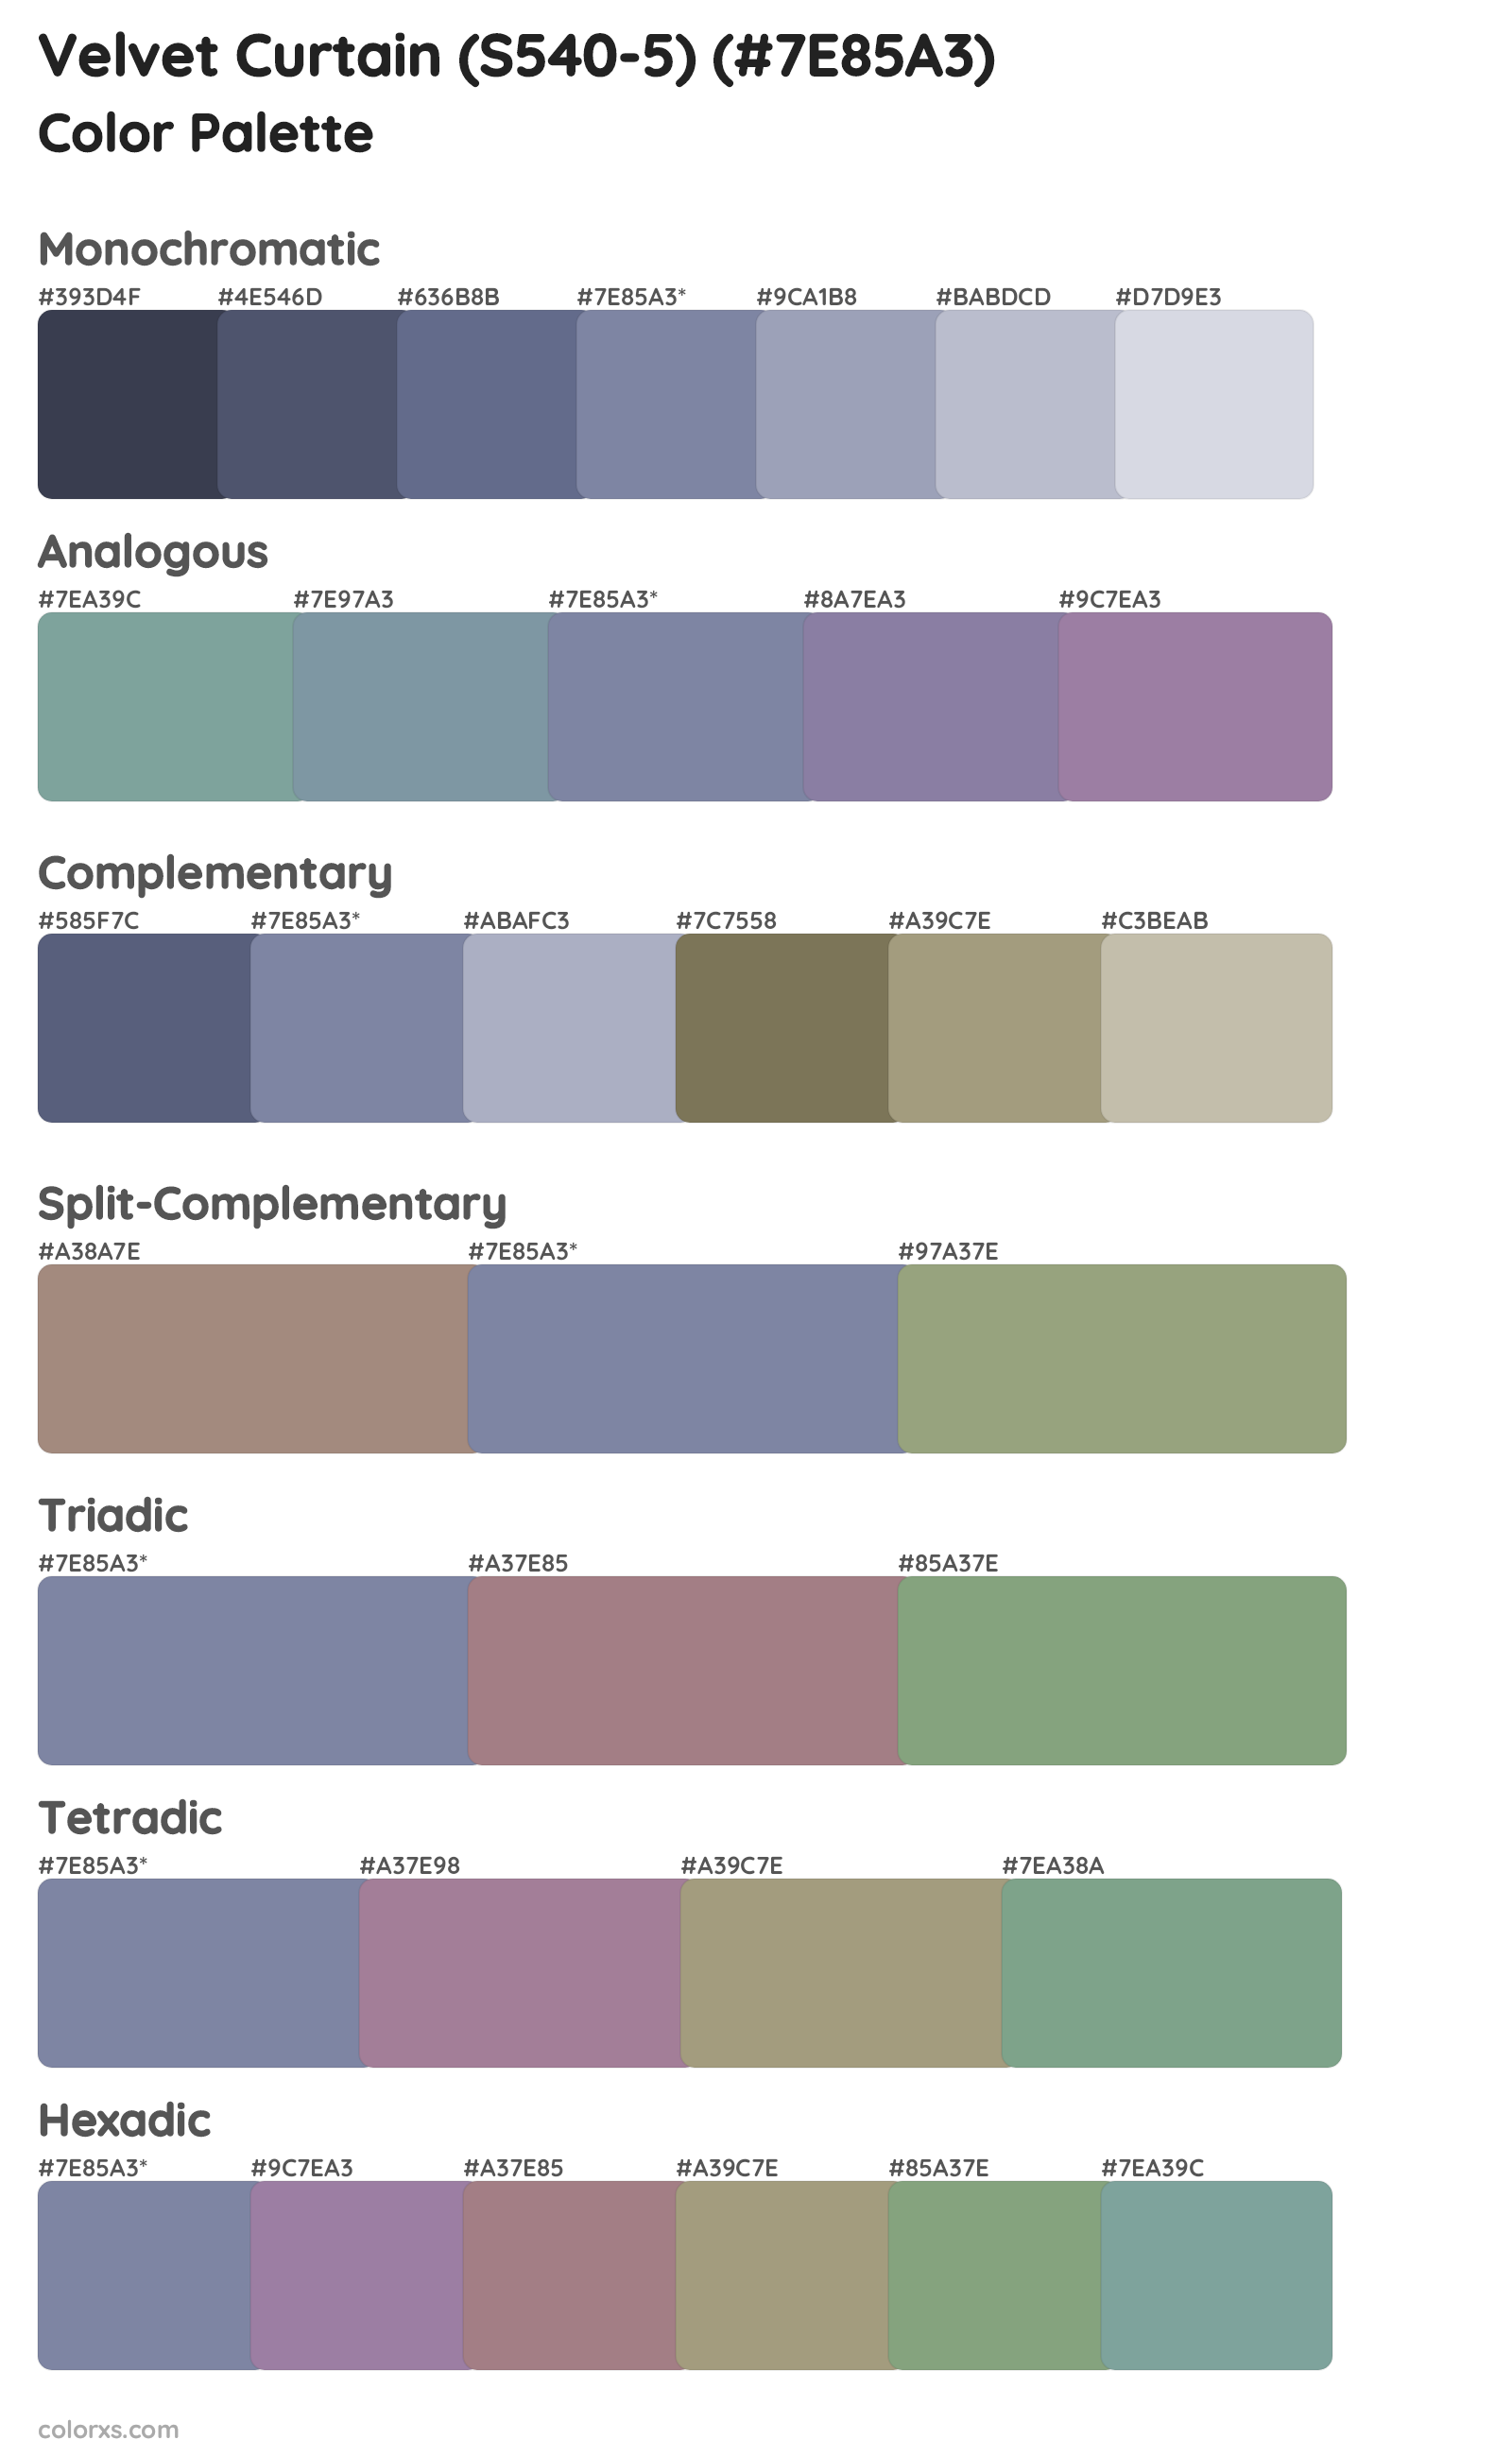 Velvet Curtain (S540-5) Color Scheme Palettes